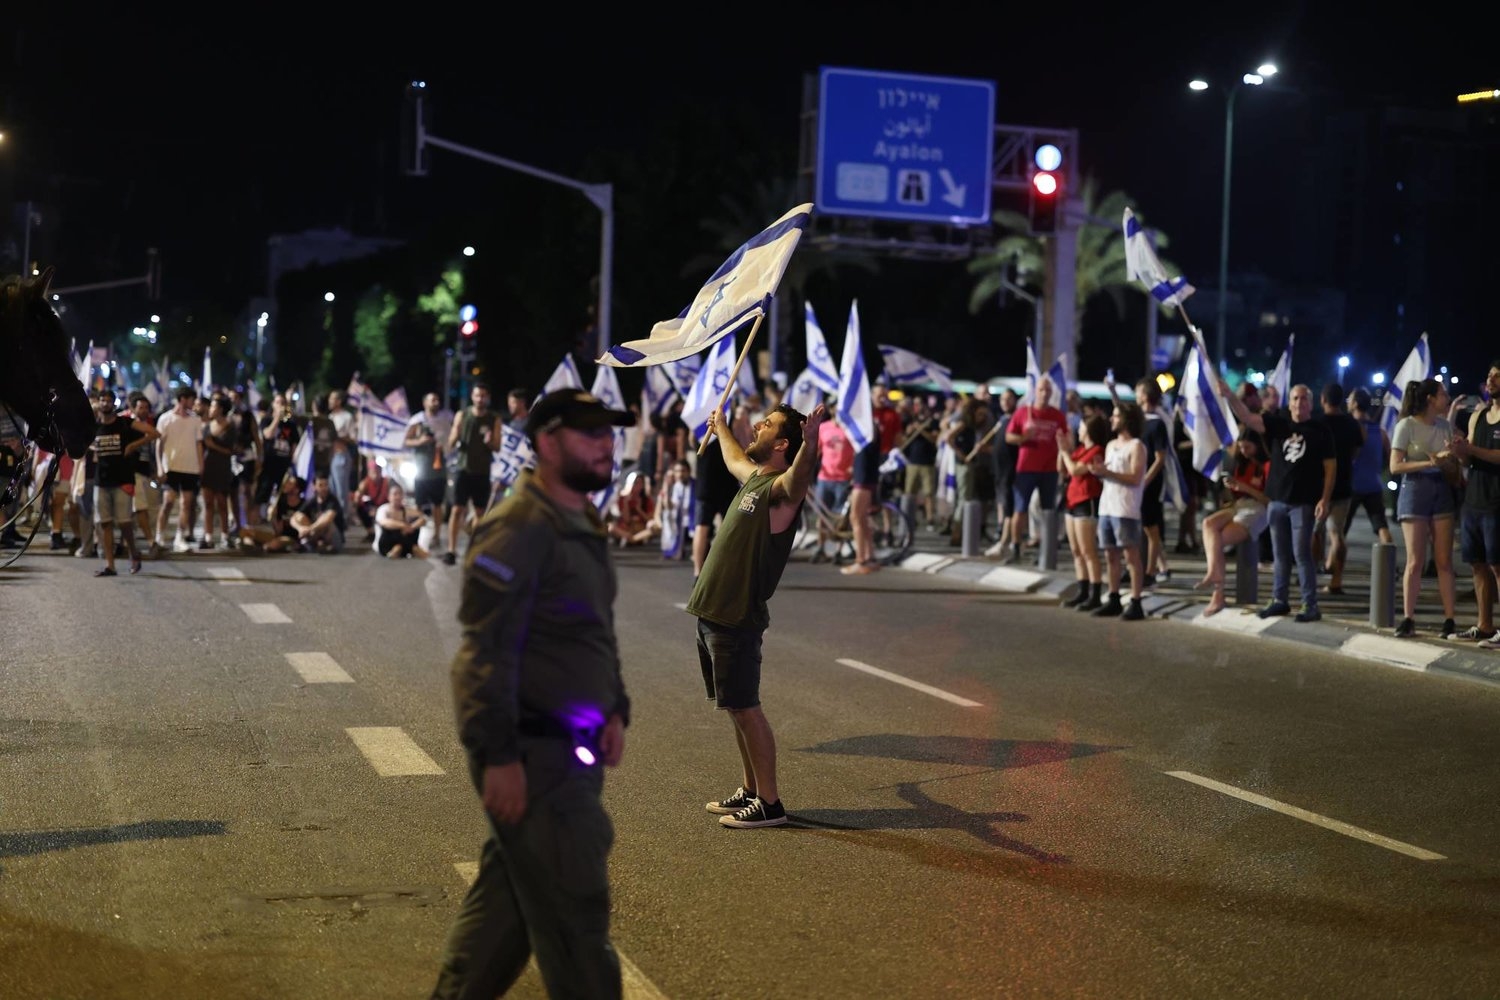 احتجاجات حاشدة في إسرائيل قبل تصويت حاسم على الإصلاح القضائي